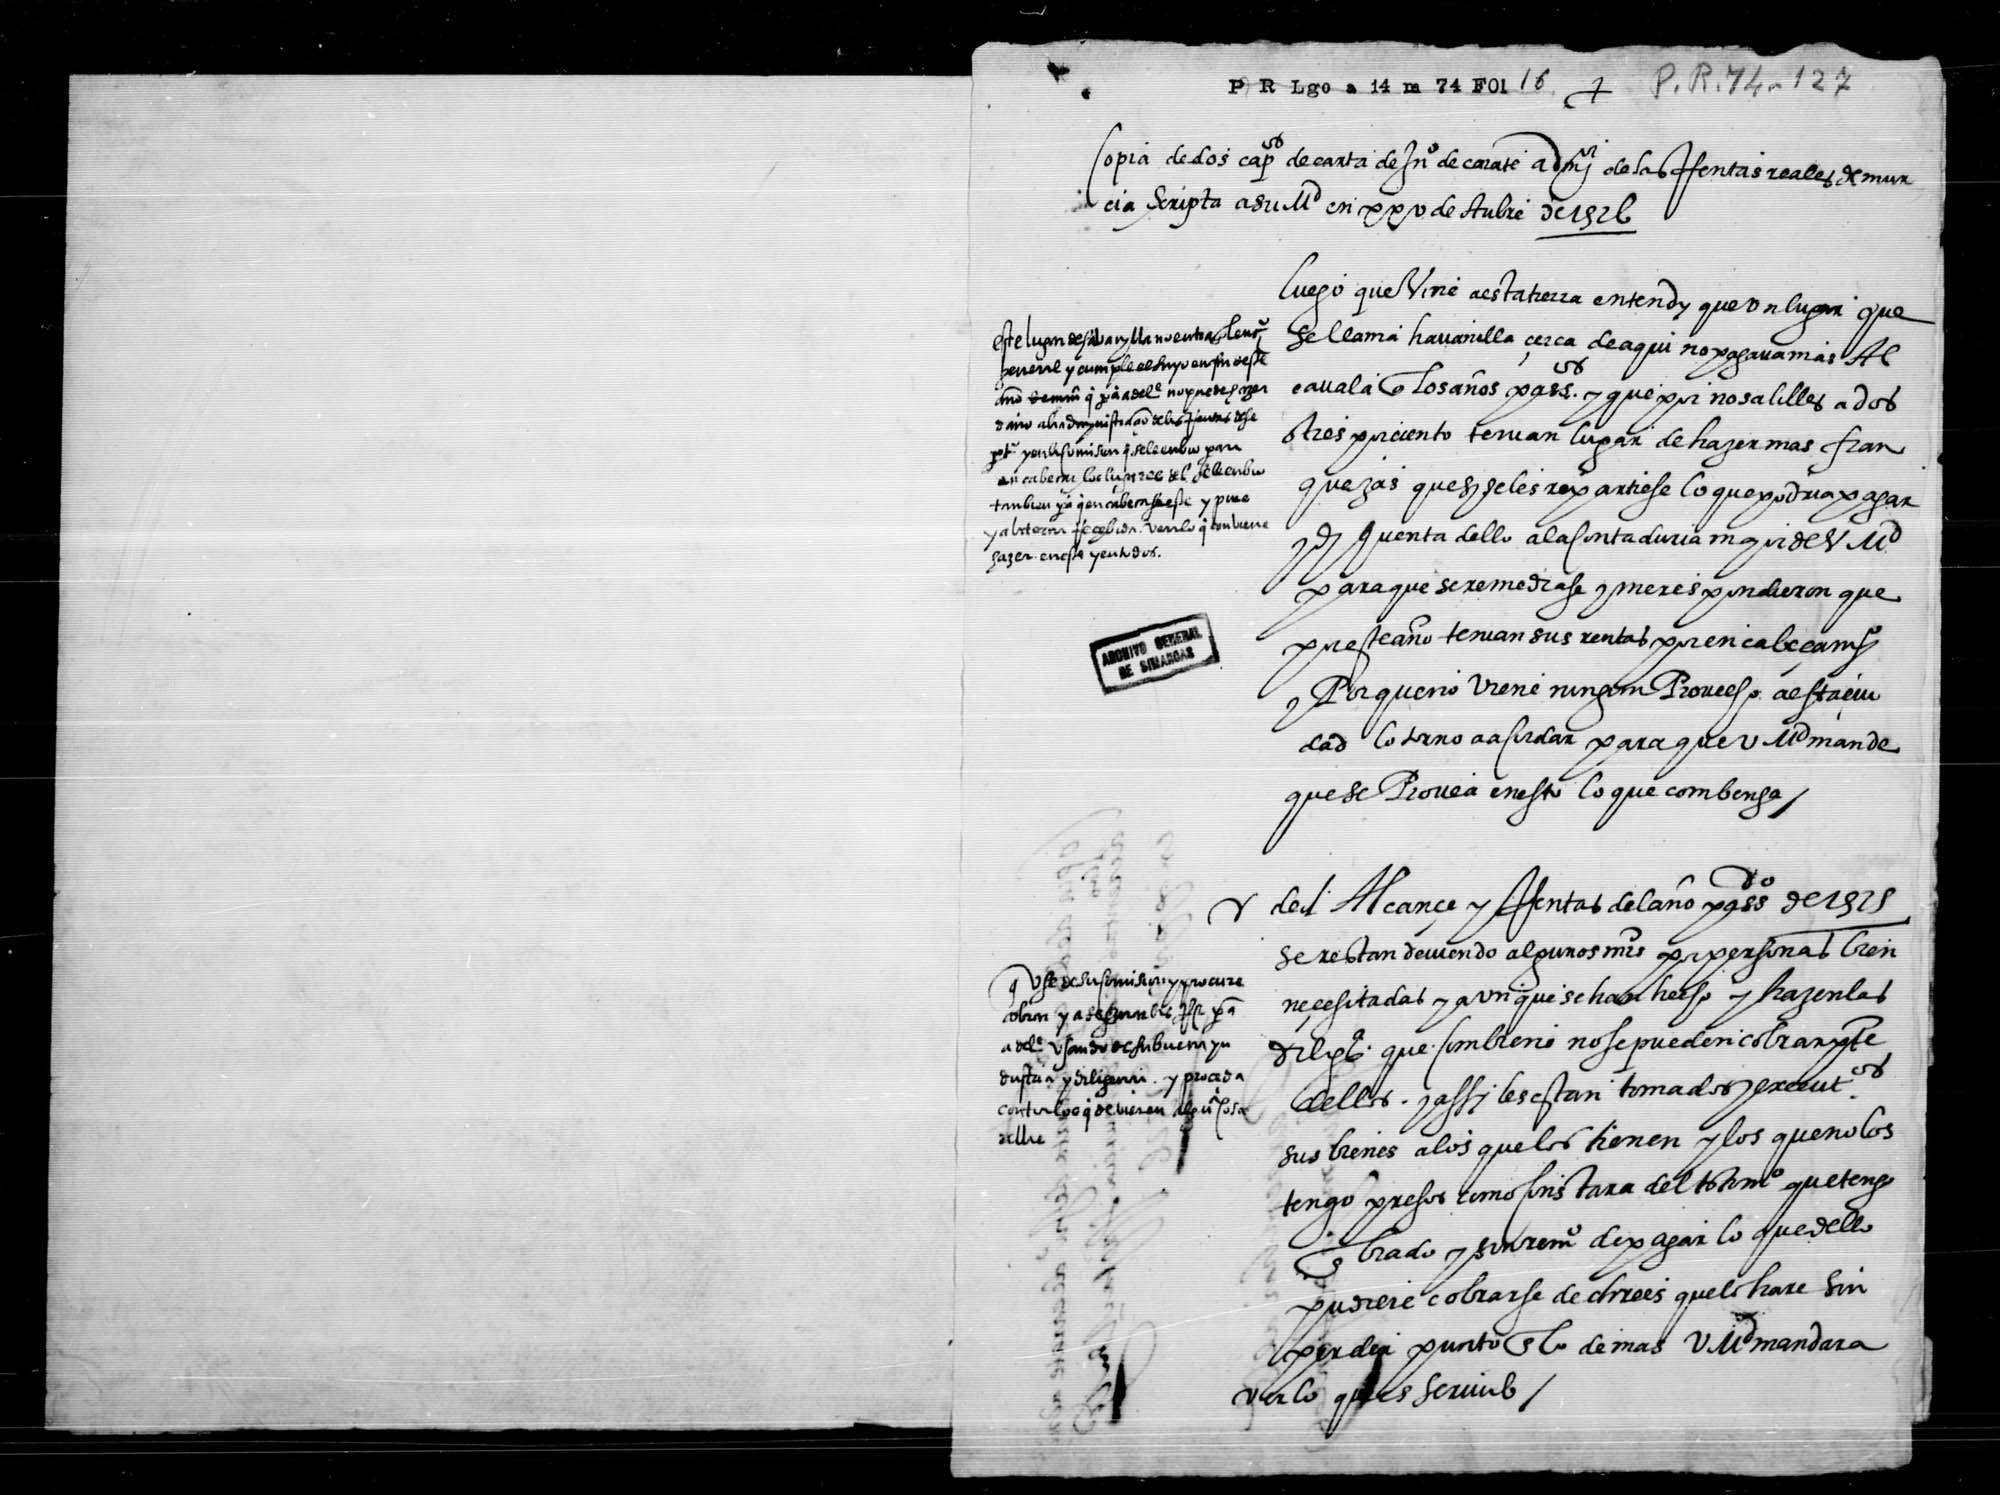 Copia de dos capítulos de carta del administrador Juan de Zárate a Su Majestad, escrita el 25-IV-1576, relativas a alcabalas de Abanilla y alcance de rentas de 1575. 